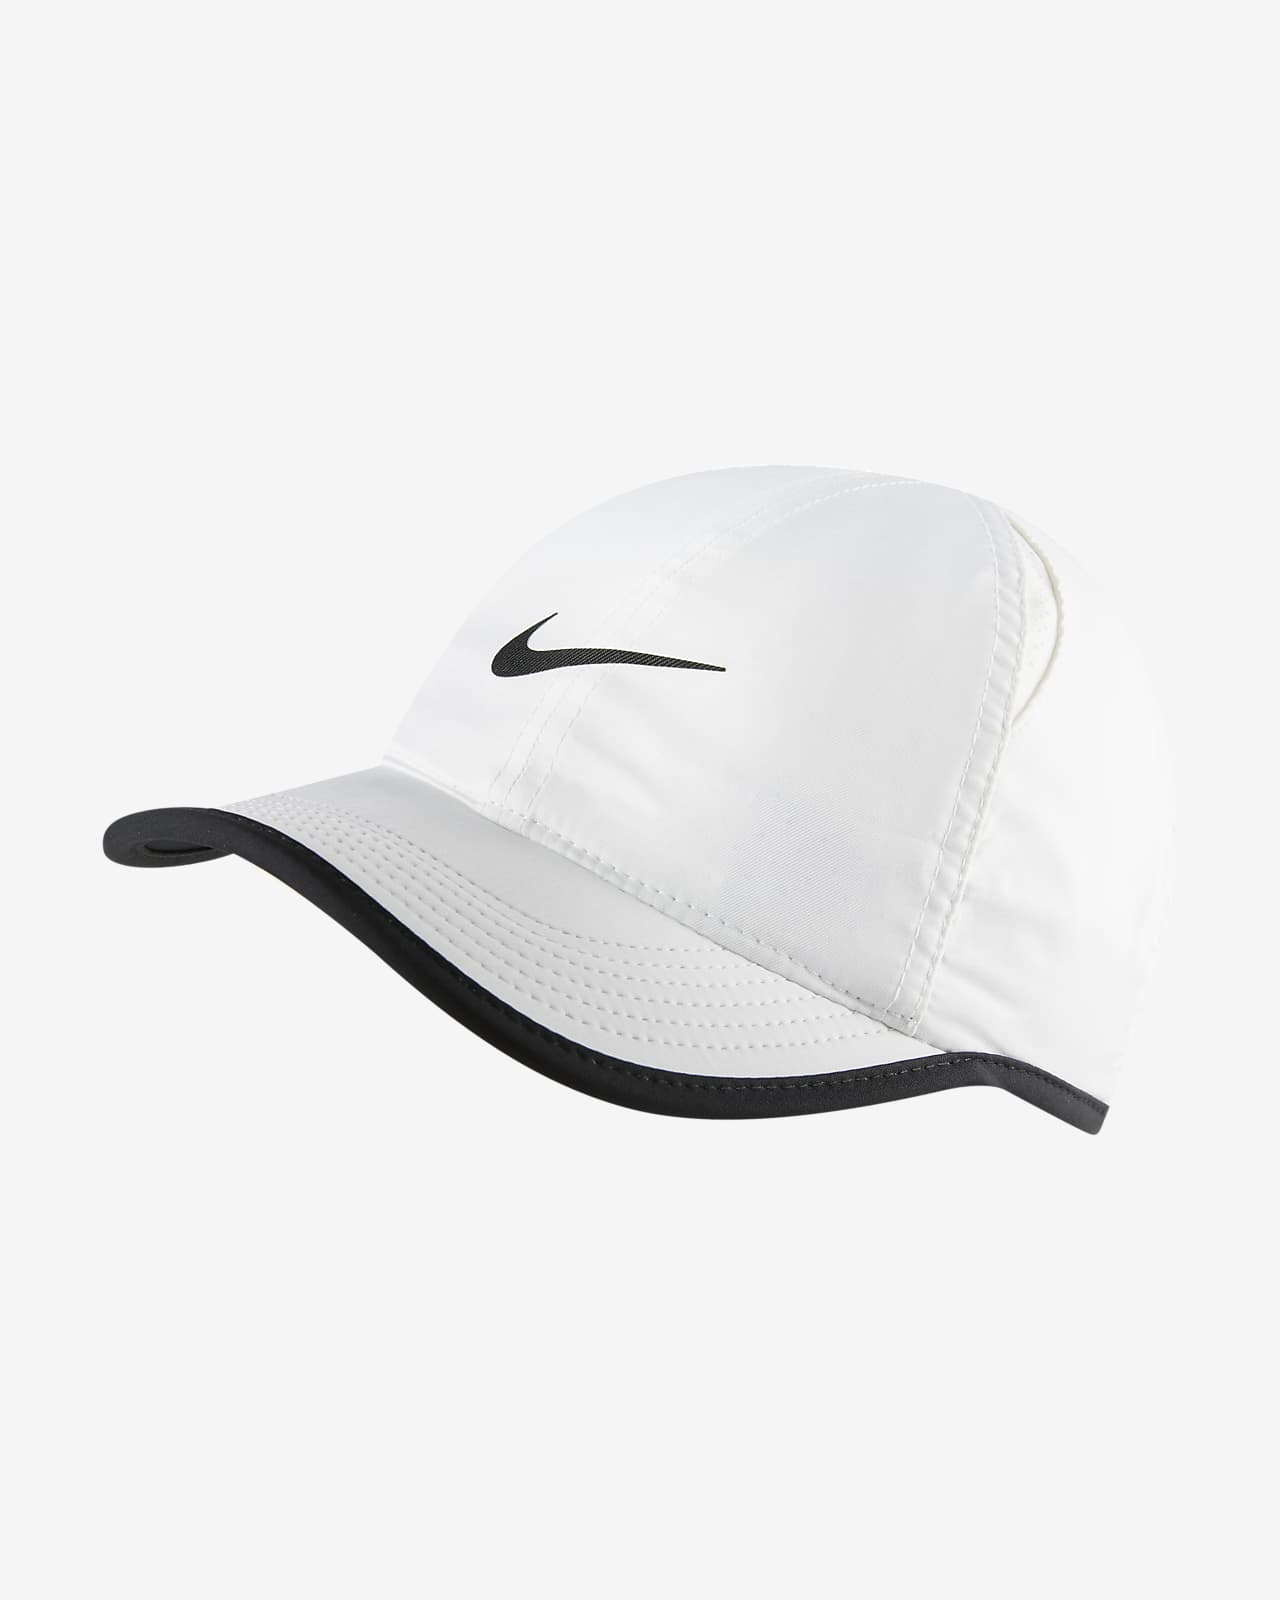 Nike AeroBill Featherlight Kids' Adjustable Hat